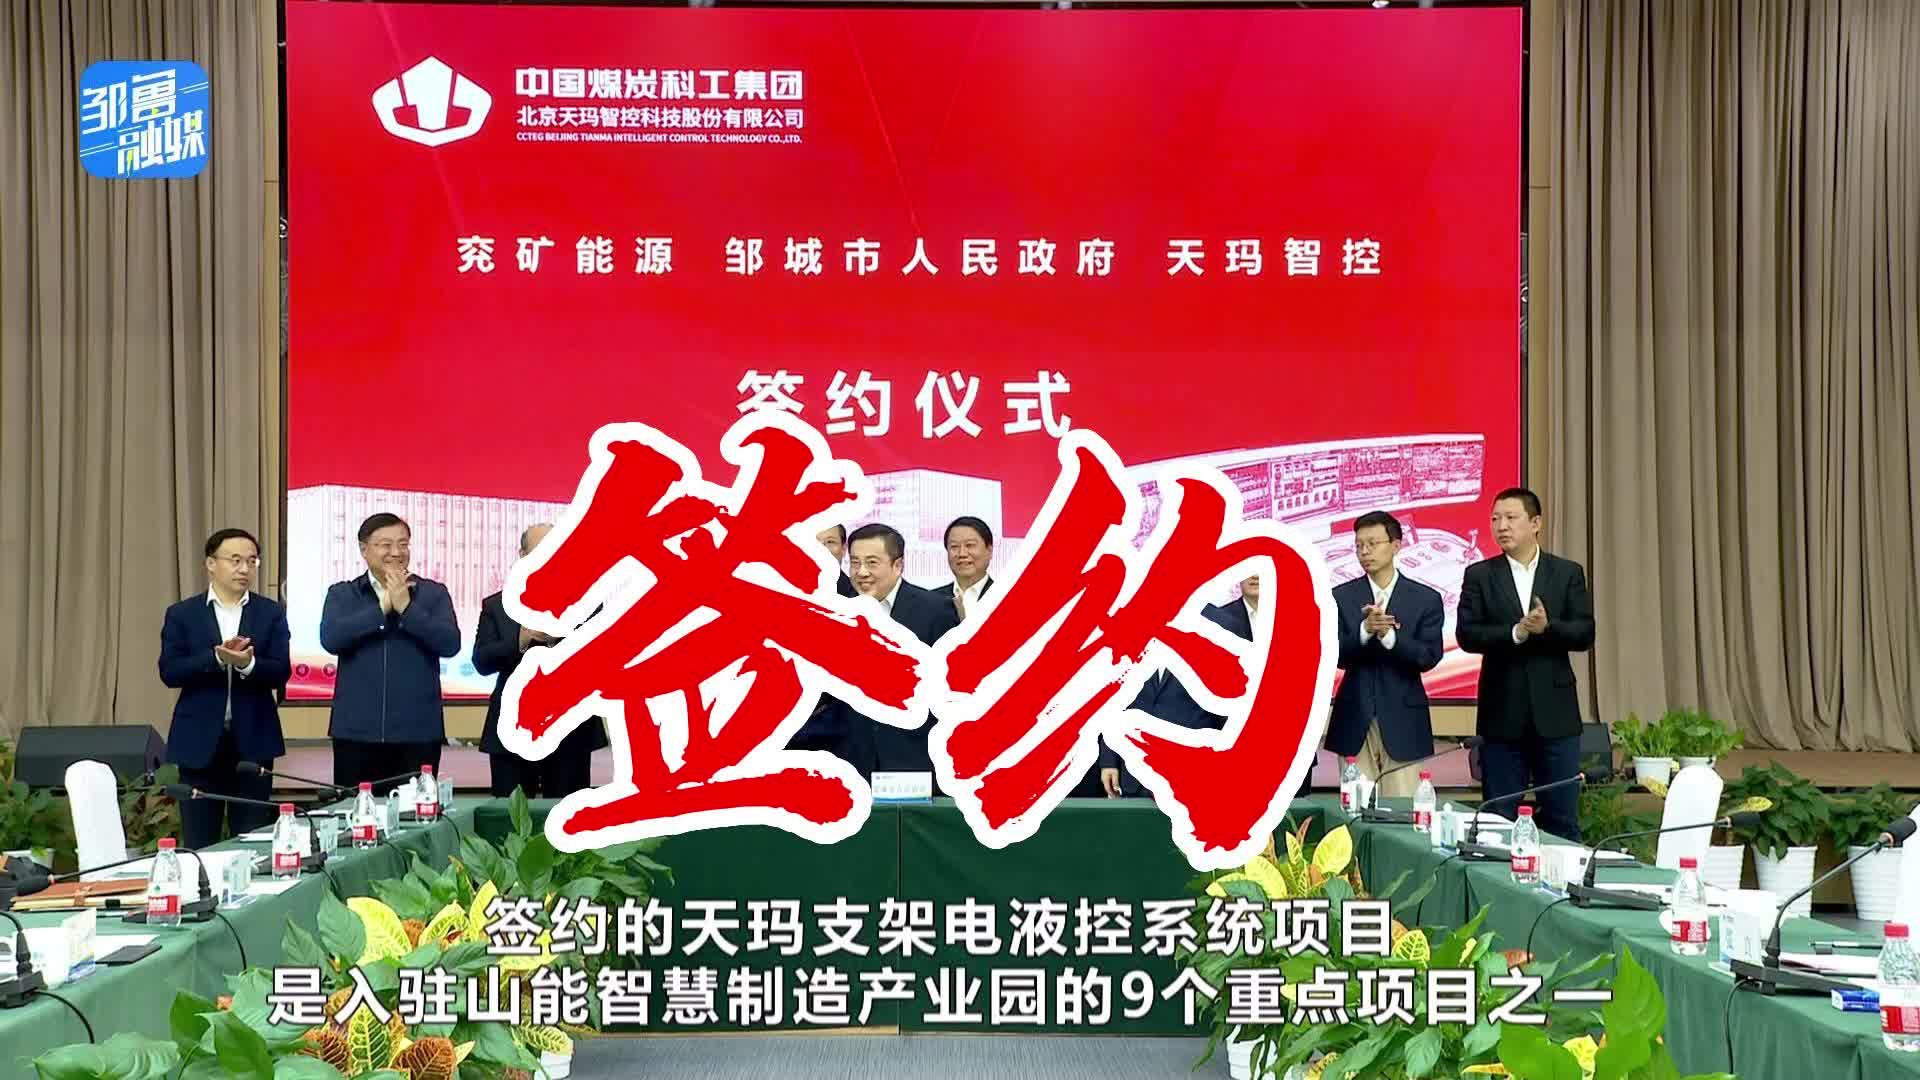 【邹视频·新闻】38秒 | 年产100套支架电液控系统项目在北京签约